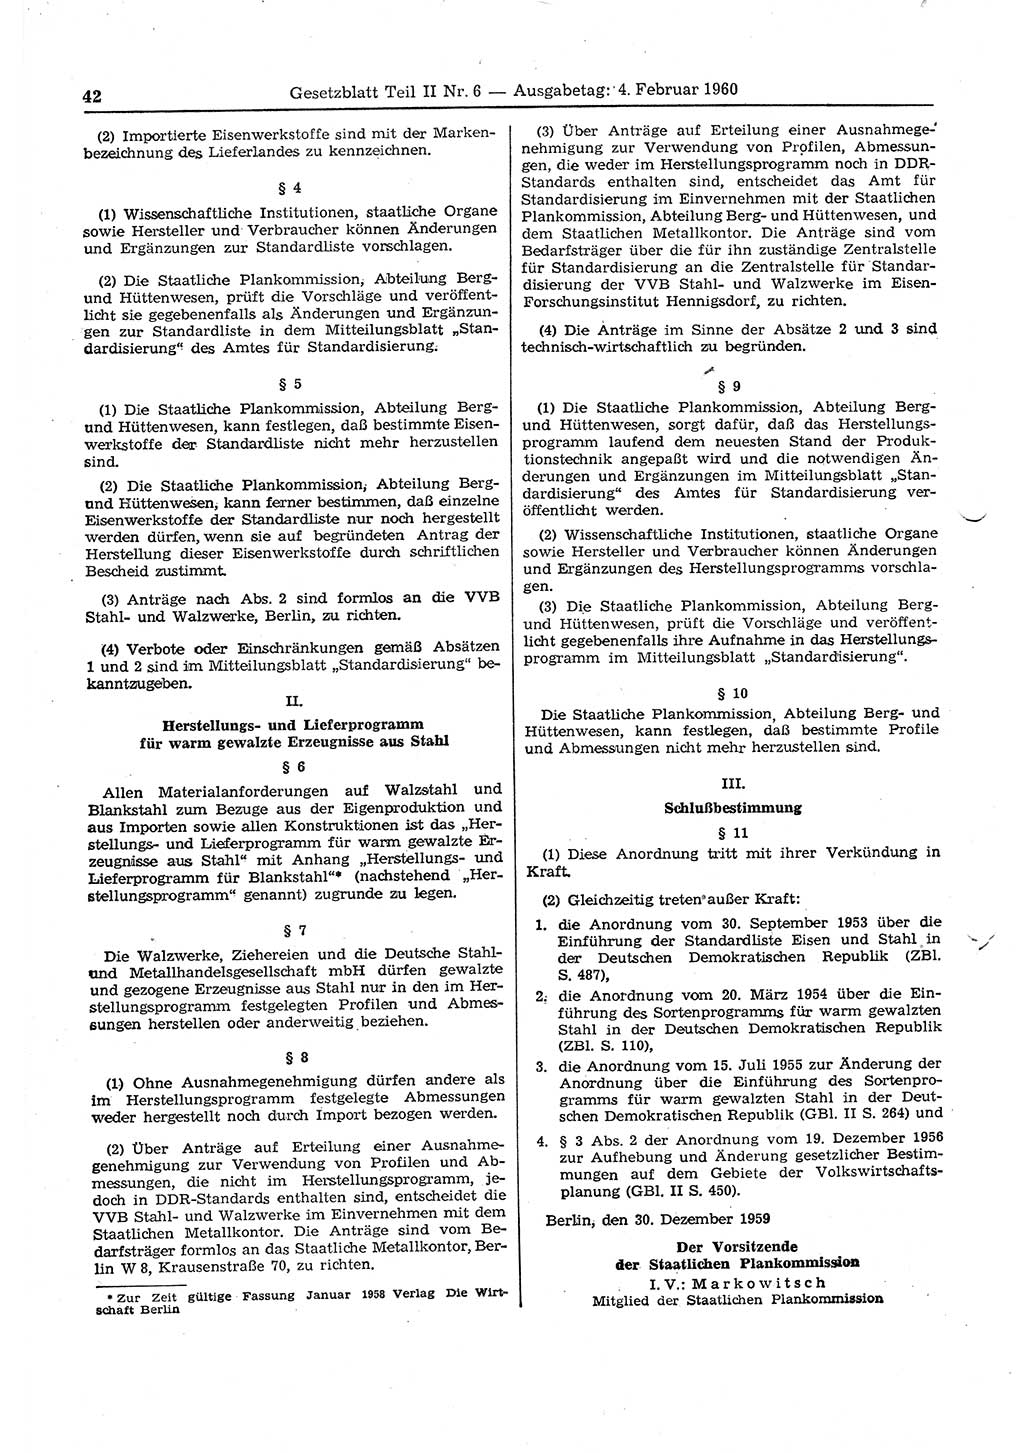 Gesetzblatt (GBl.) der Deutschen Demokratischen Republik (DDR) Teil ⅠⅠ 1960, Seite 42 (GBl. DDR ⅠⅠ 1960, S. 42)